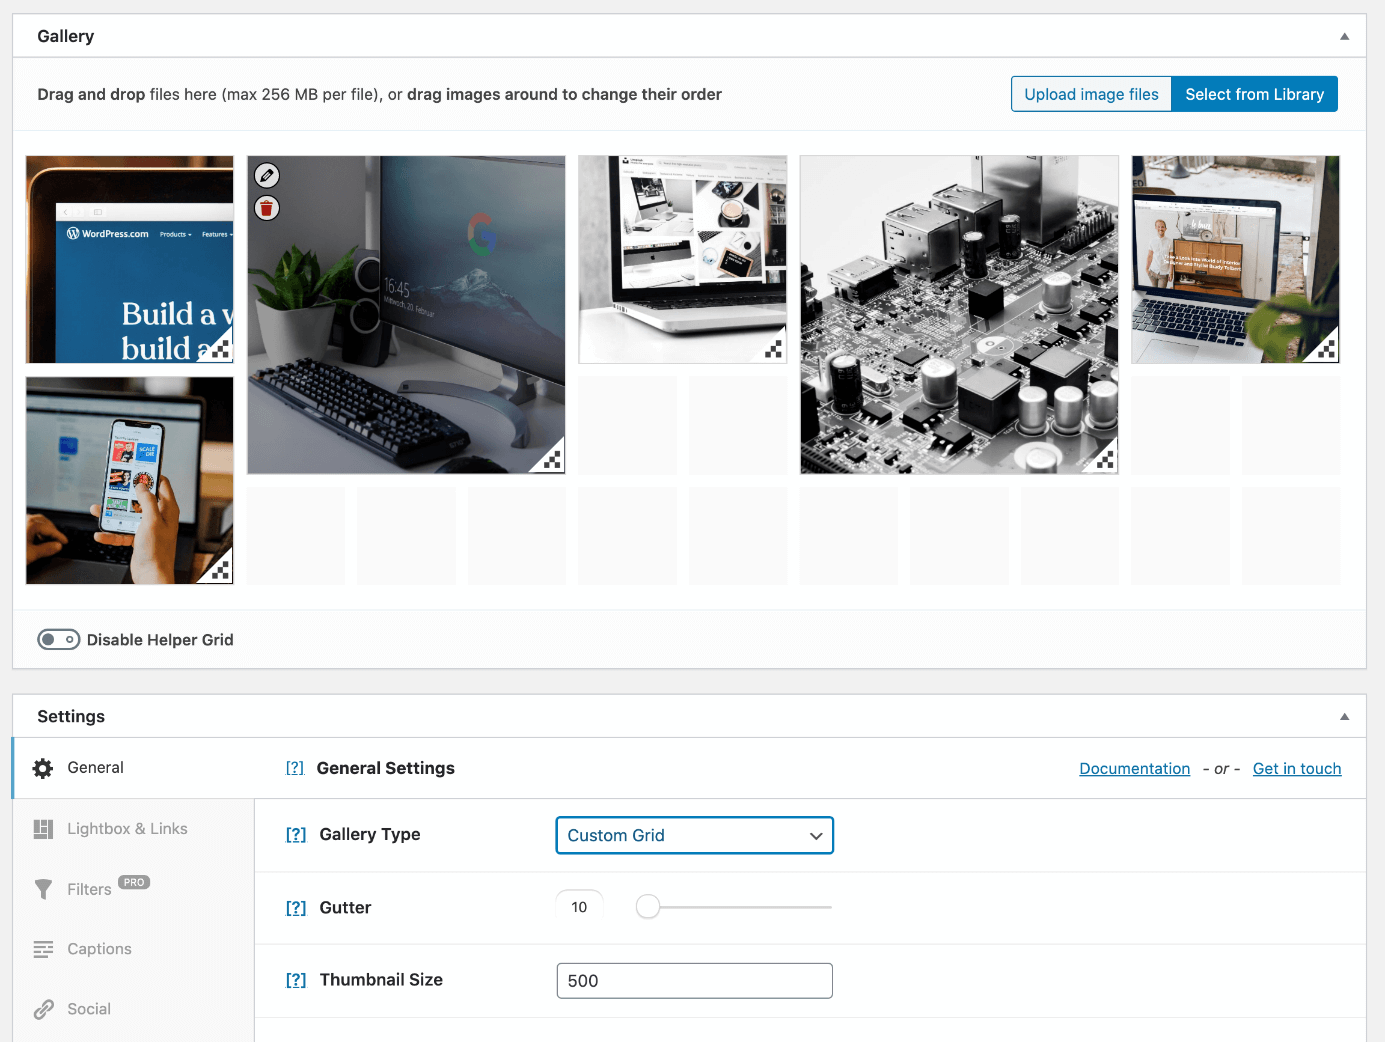 Le type de galerie « Custom Grid » vous permet d’adapter individuellement les dimensions des images